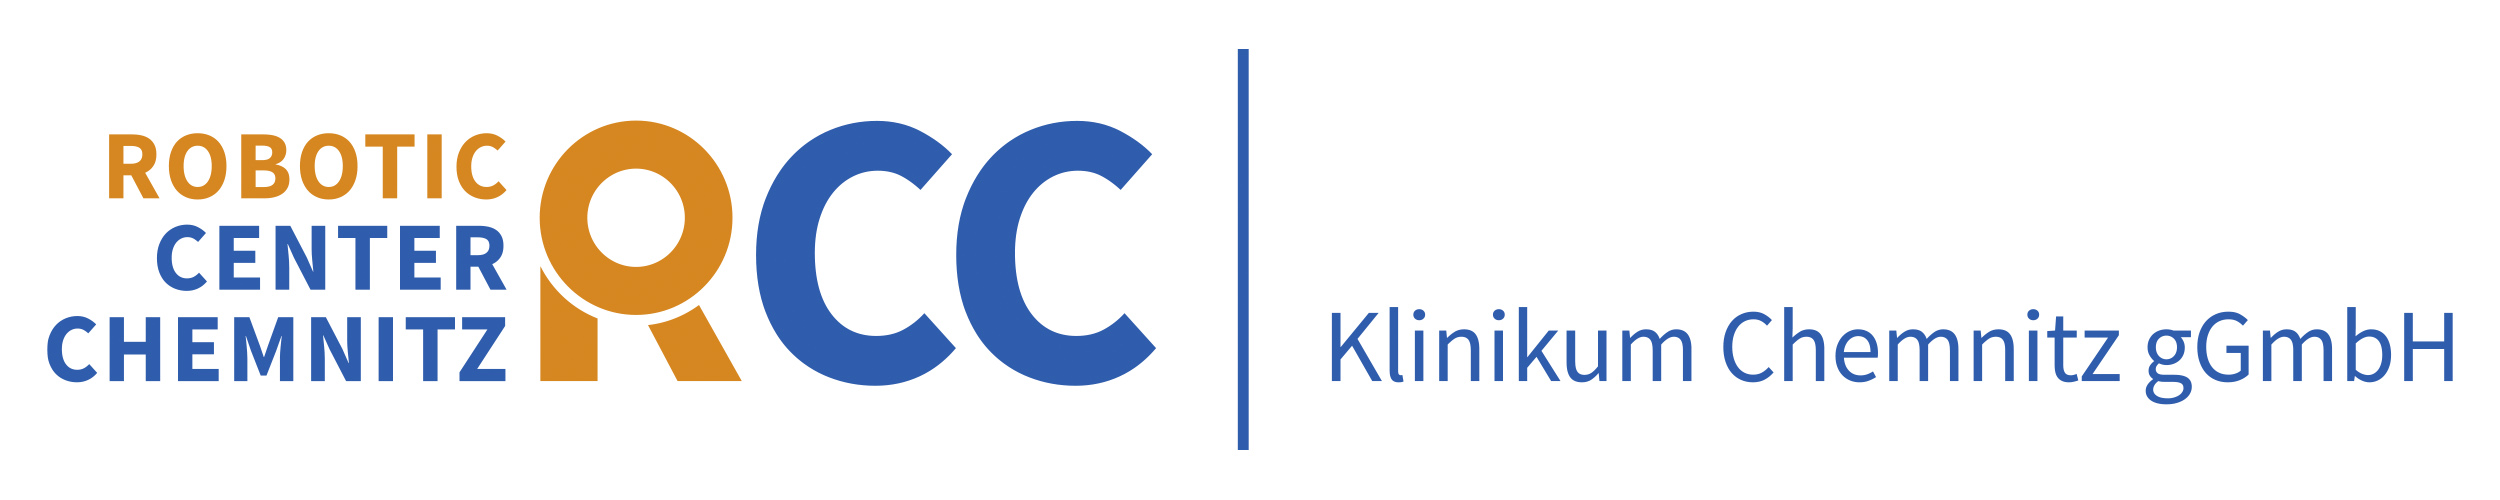 Logo: Robotic Center Chemnitz